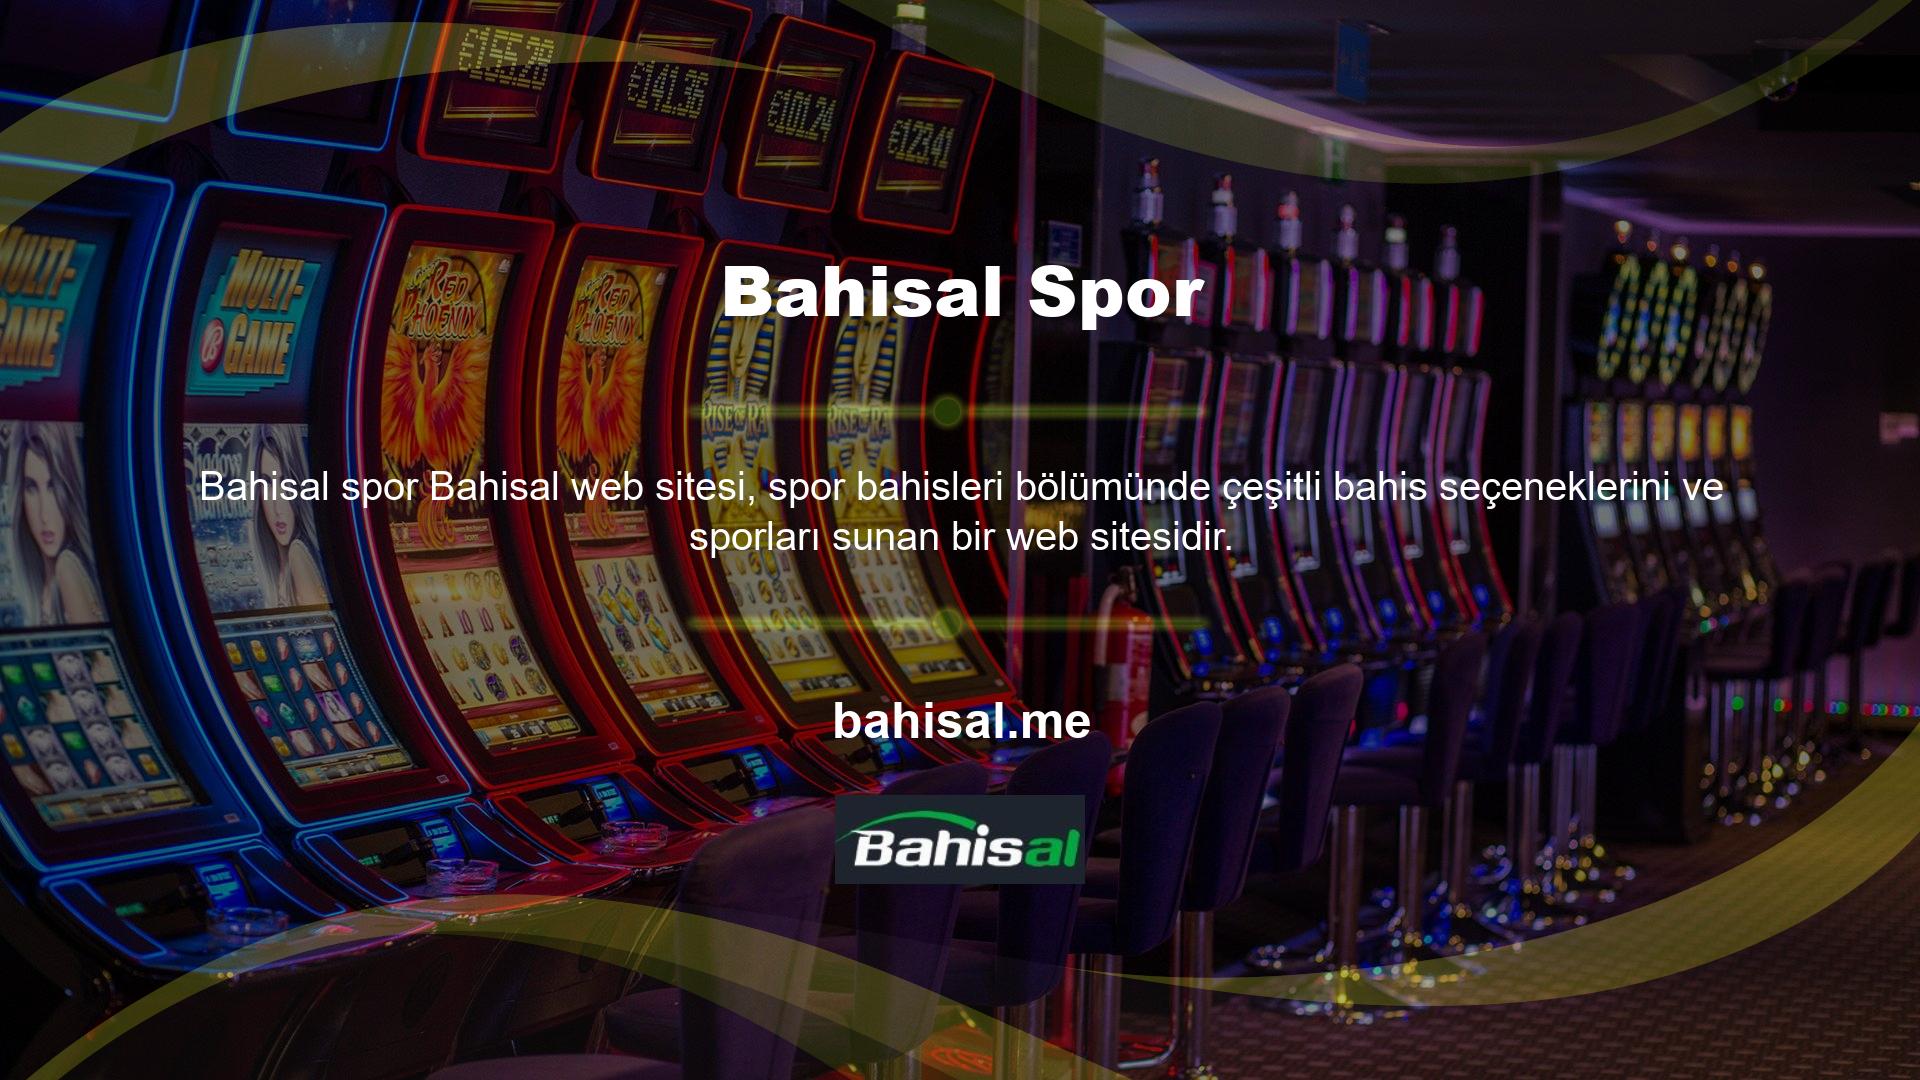 Ayrıca Bahisal web sitesinin casino bölümü çok sayıda aktif kullanıcıya sahip olup, poker gibi gruplarda popüler casino oyunlarını hızlı bir şekilde oynamalarına olanak sağlamaktadır